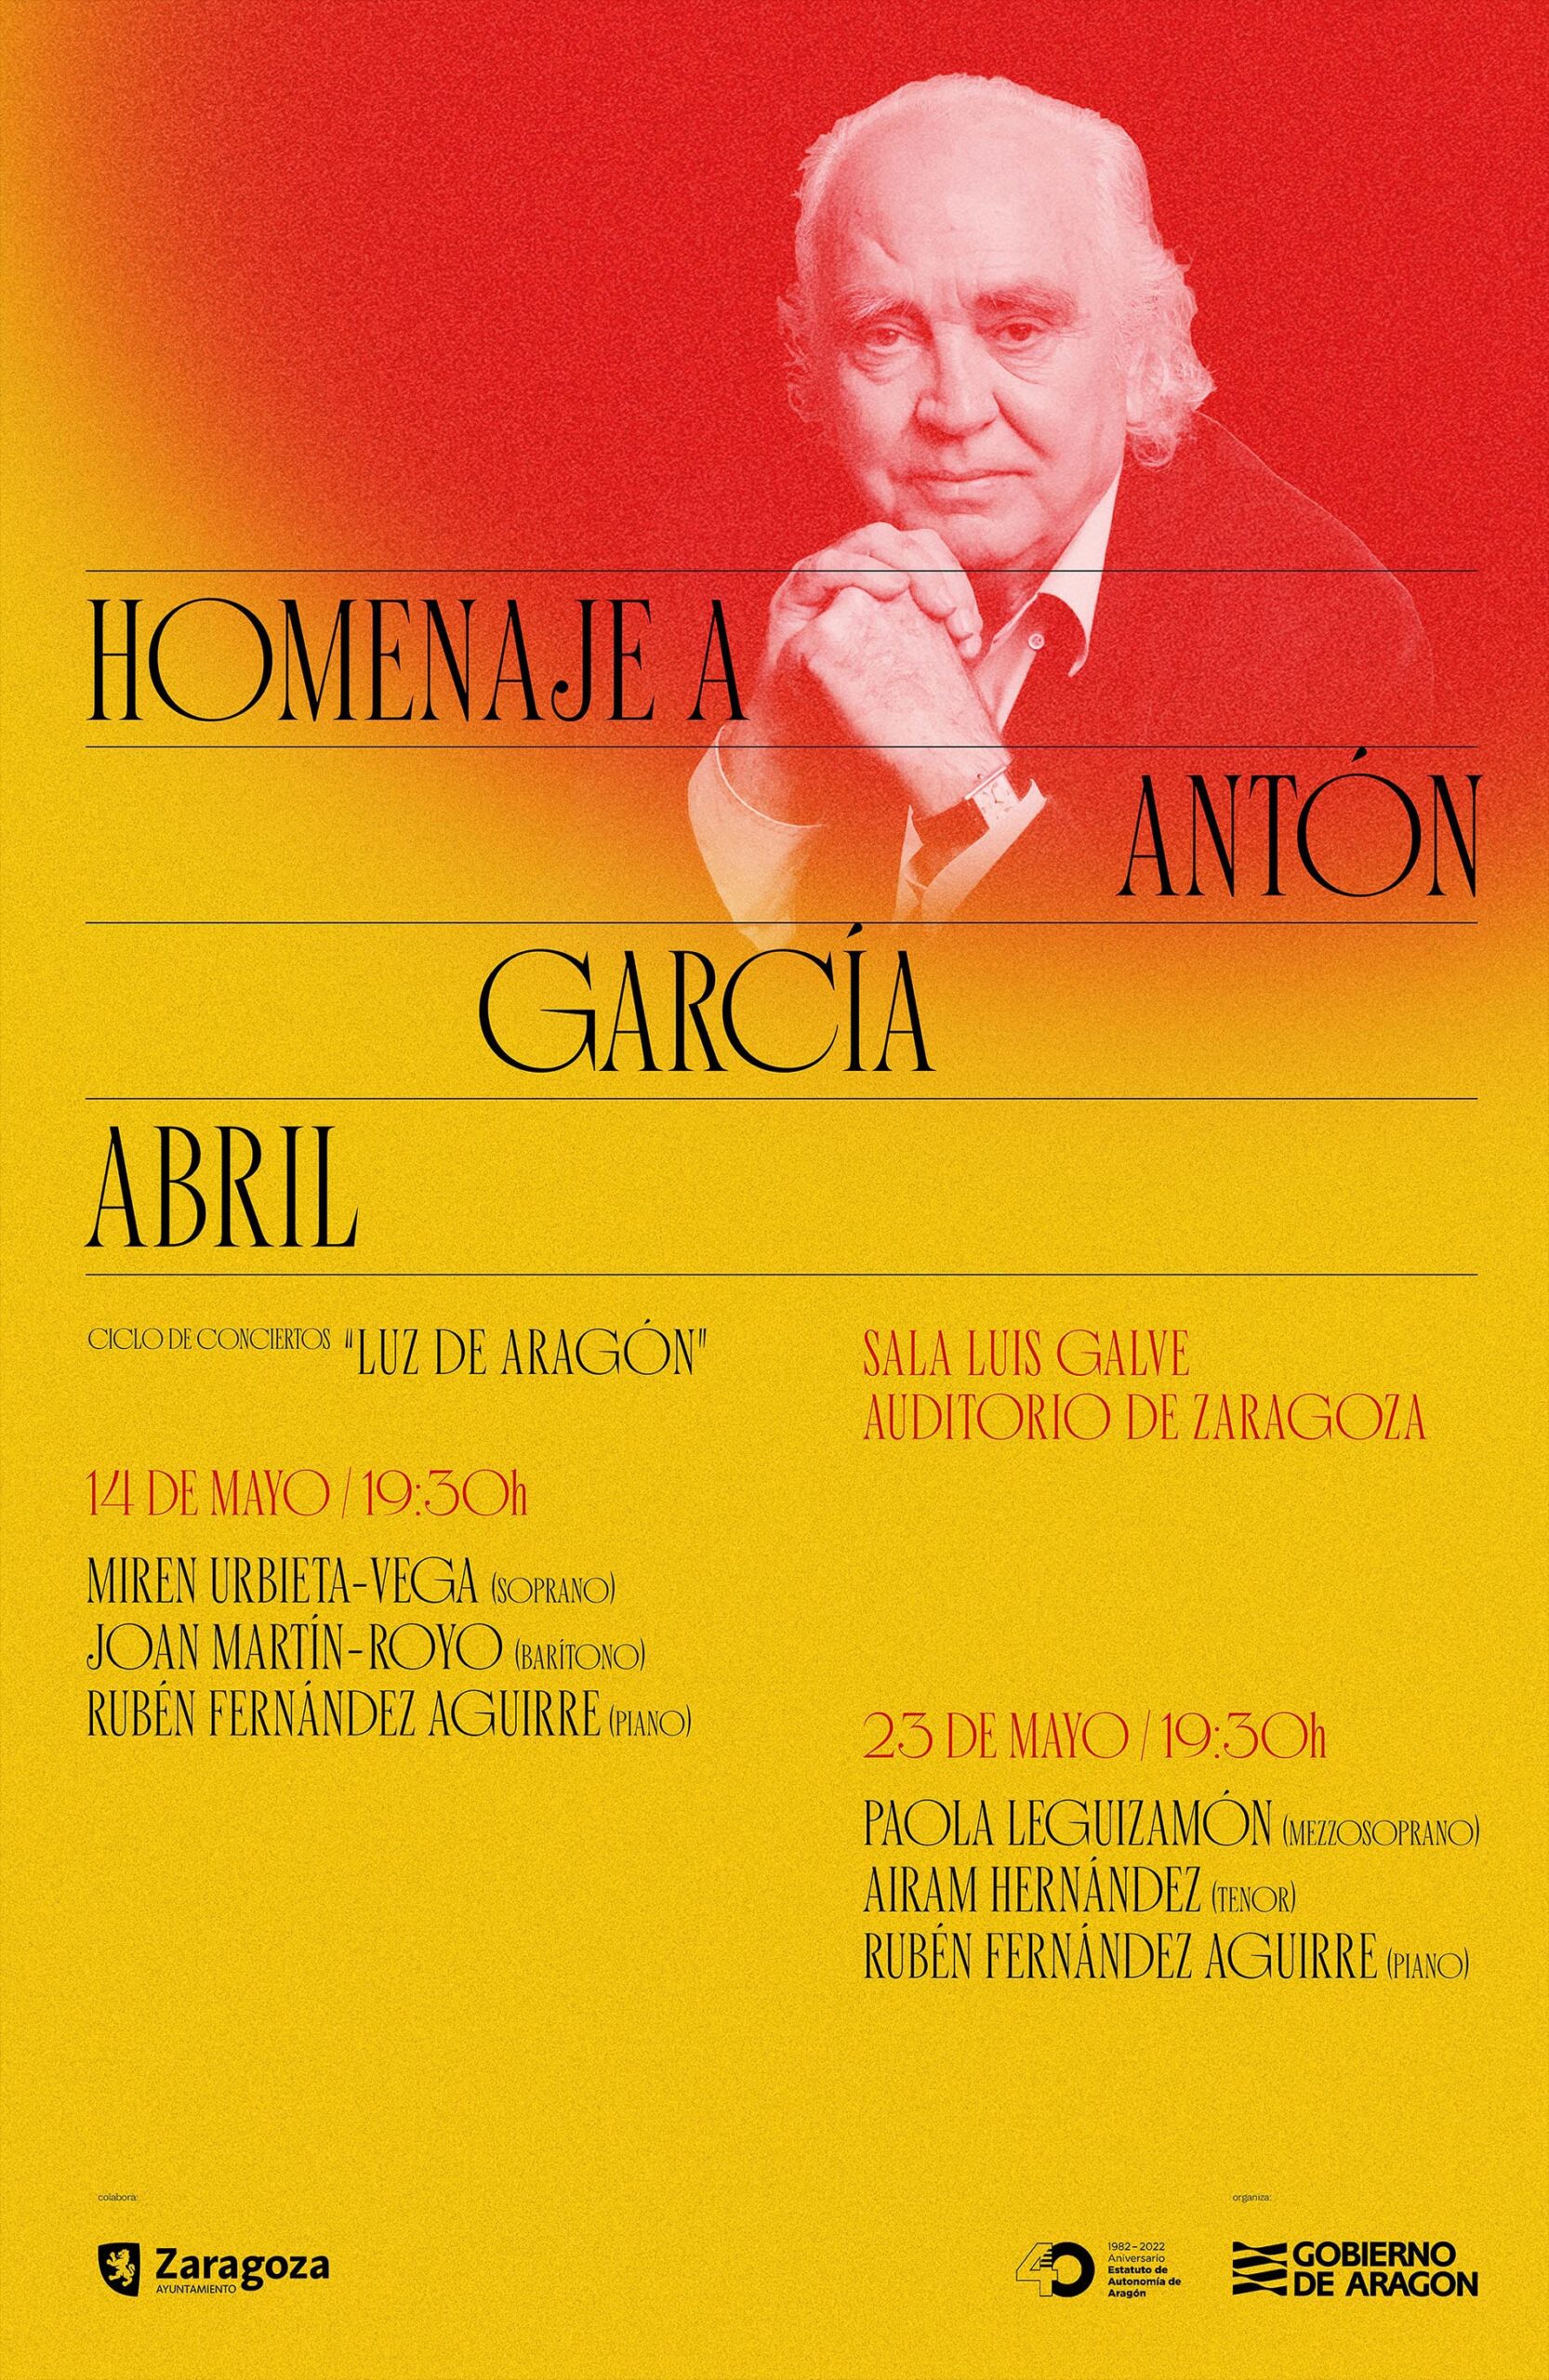 Homenaje a Antón García Abril